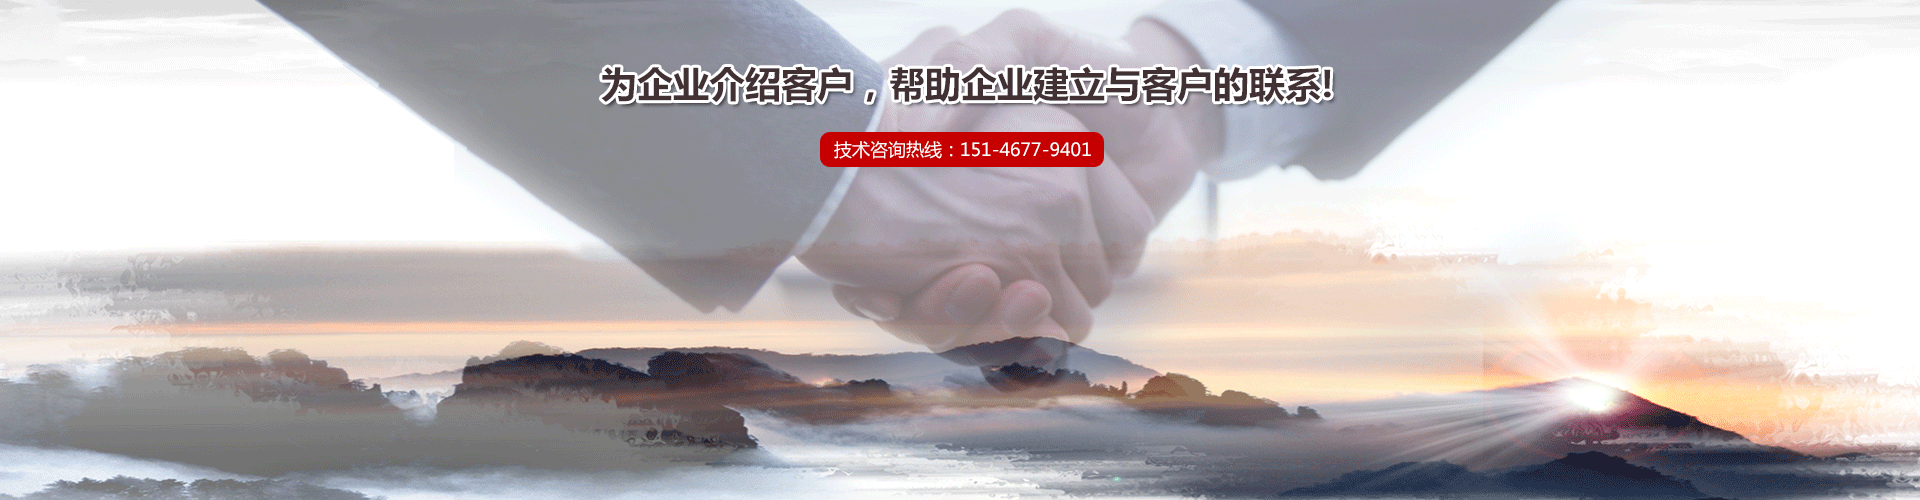 洛阳市玉鑫新材料技术-8455，新葡萄app有限公司